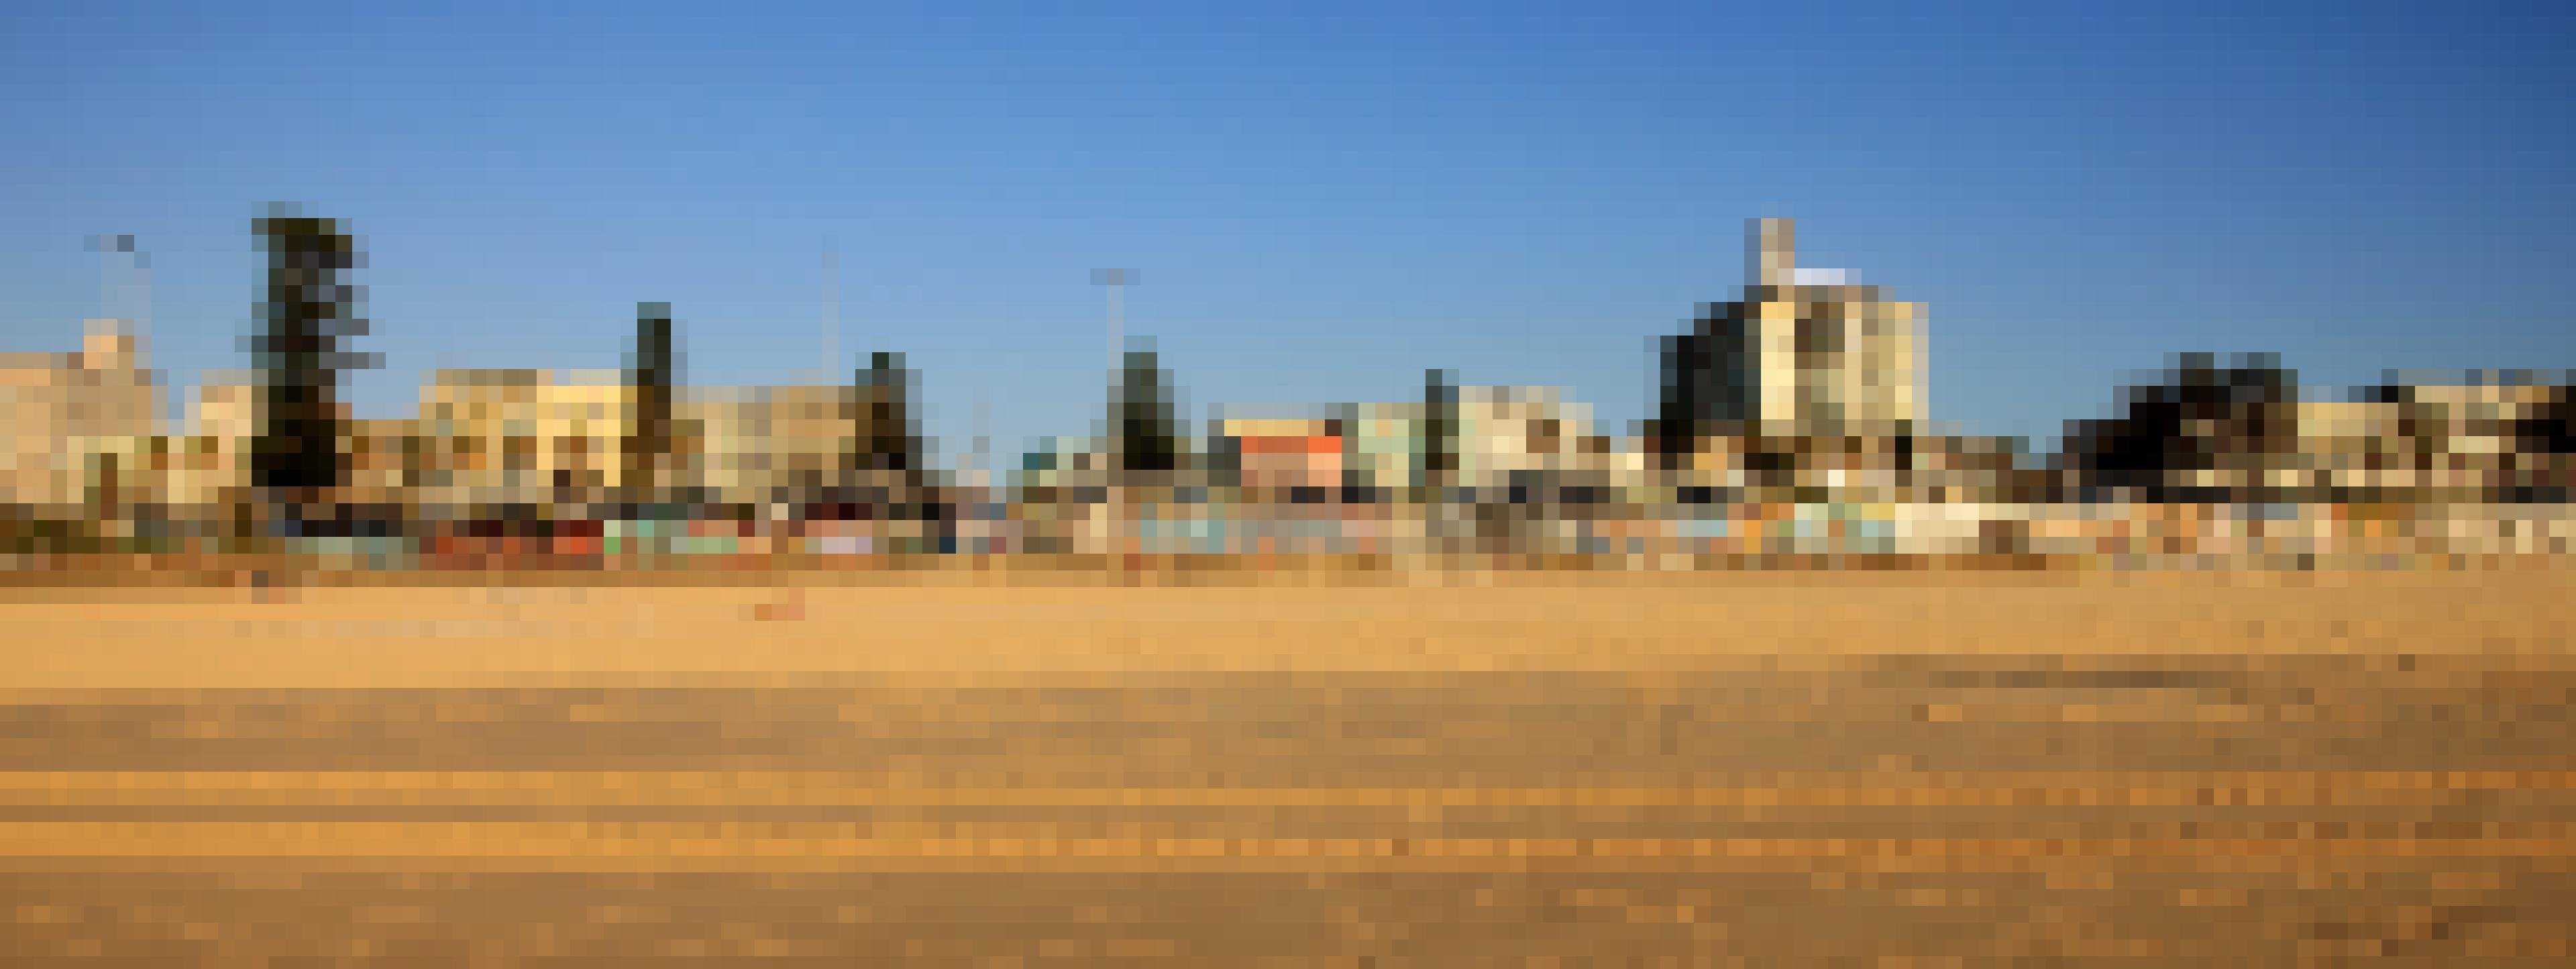 Bondi Beach – Sydneys berühmtester Strand vom Meer aus gesehen – Sand, Promenade und ein Sammelsurium an Appartmentblocks